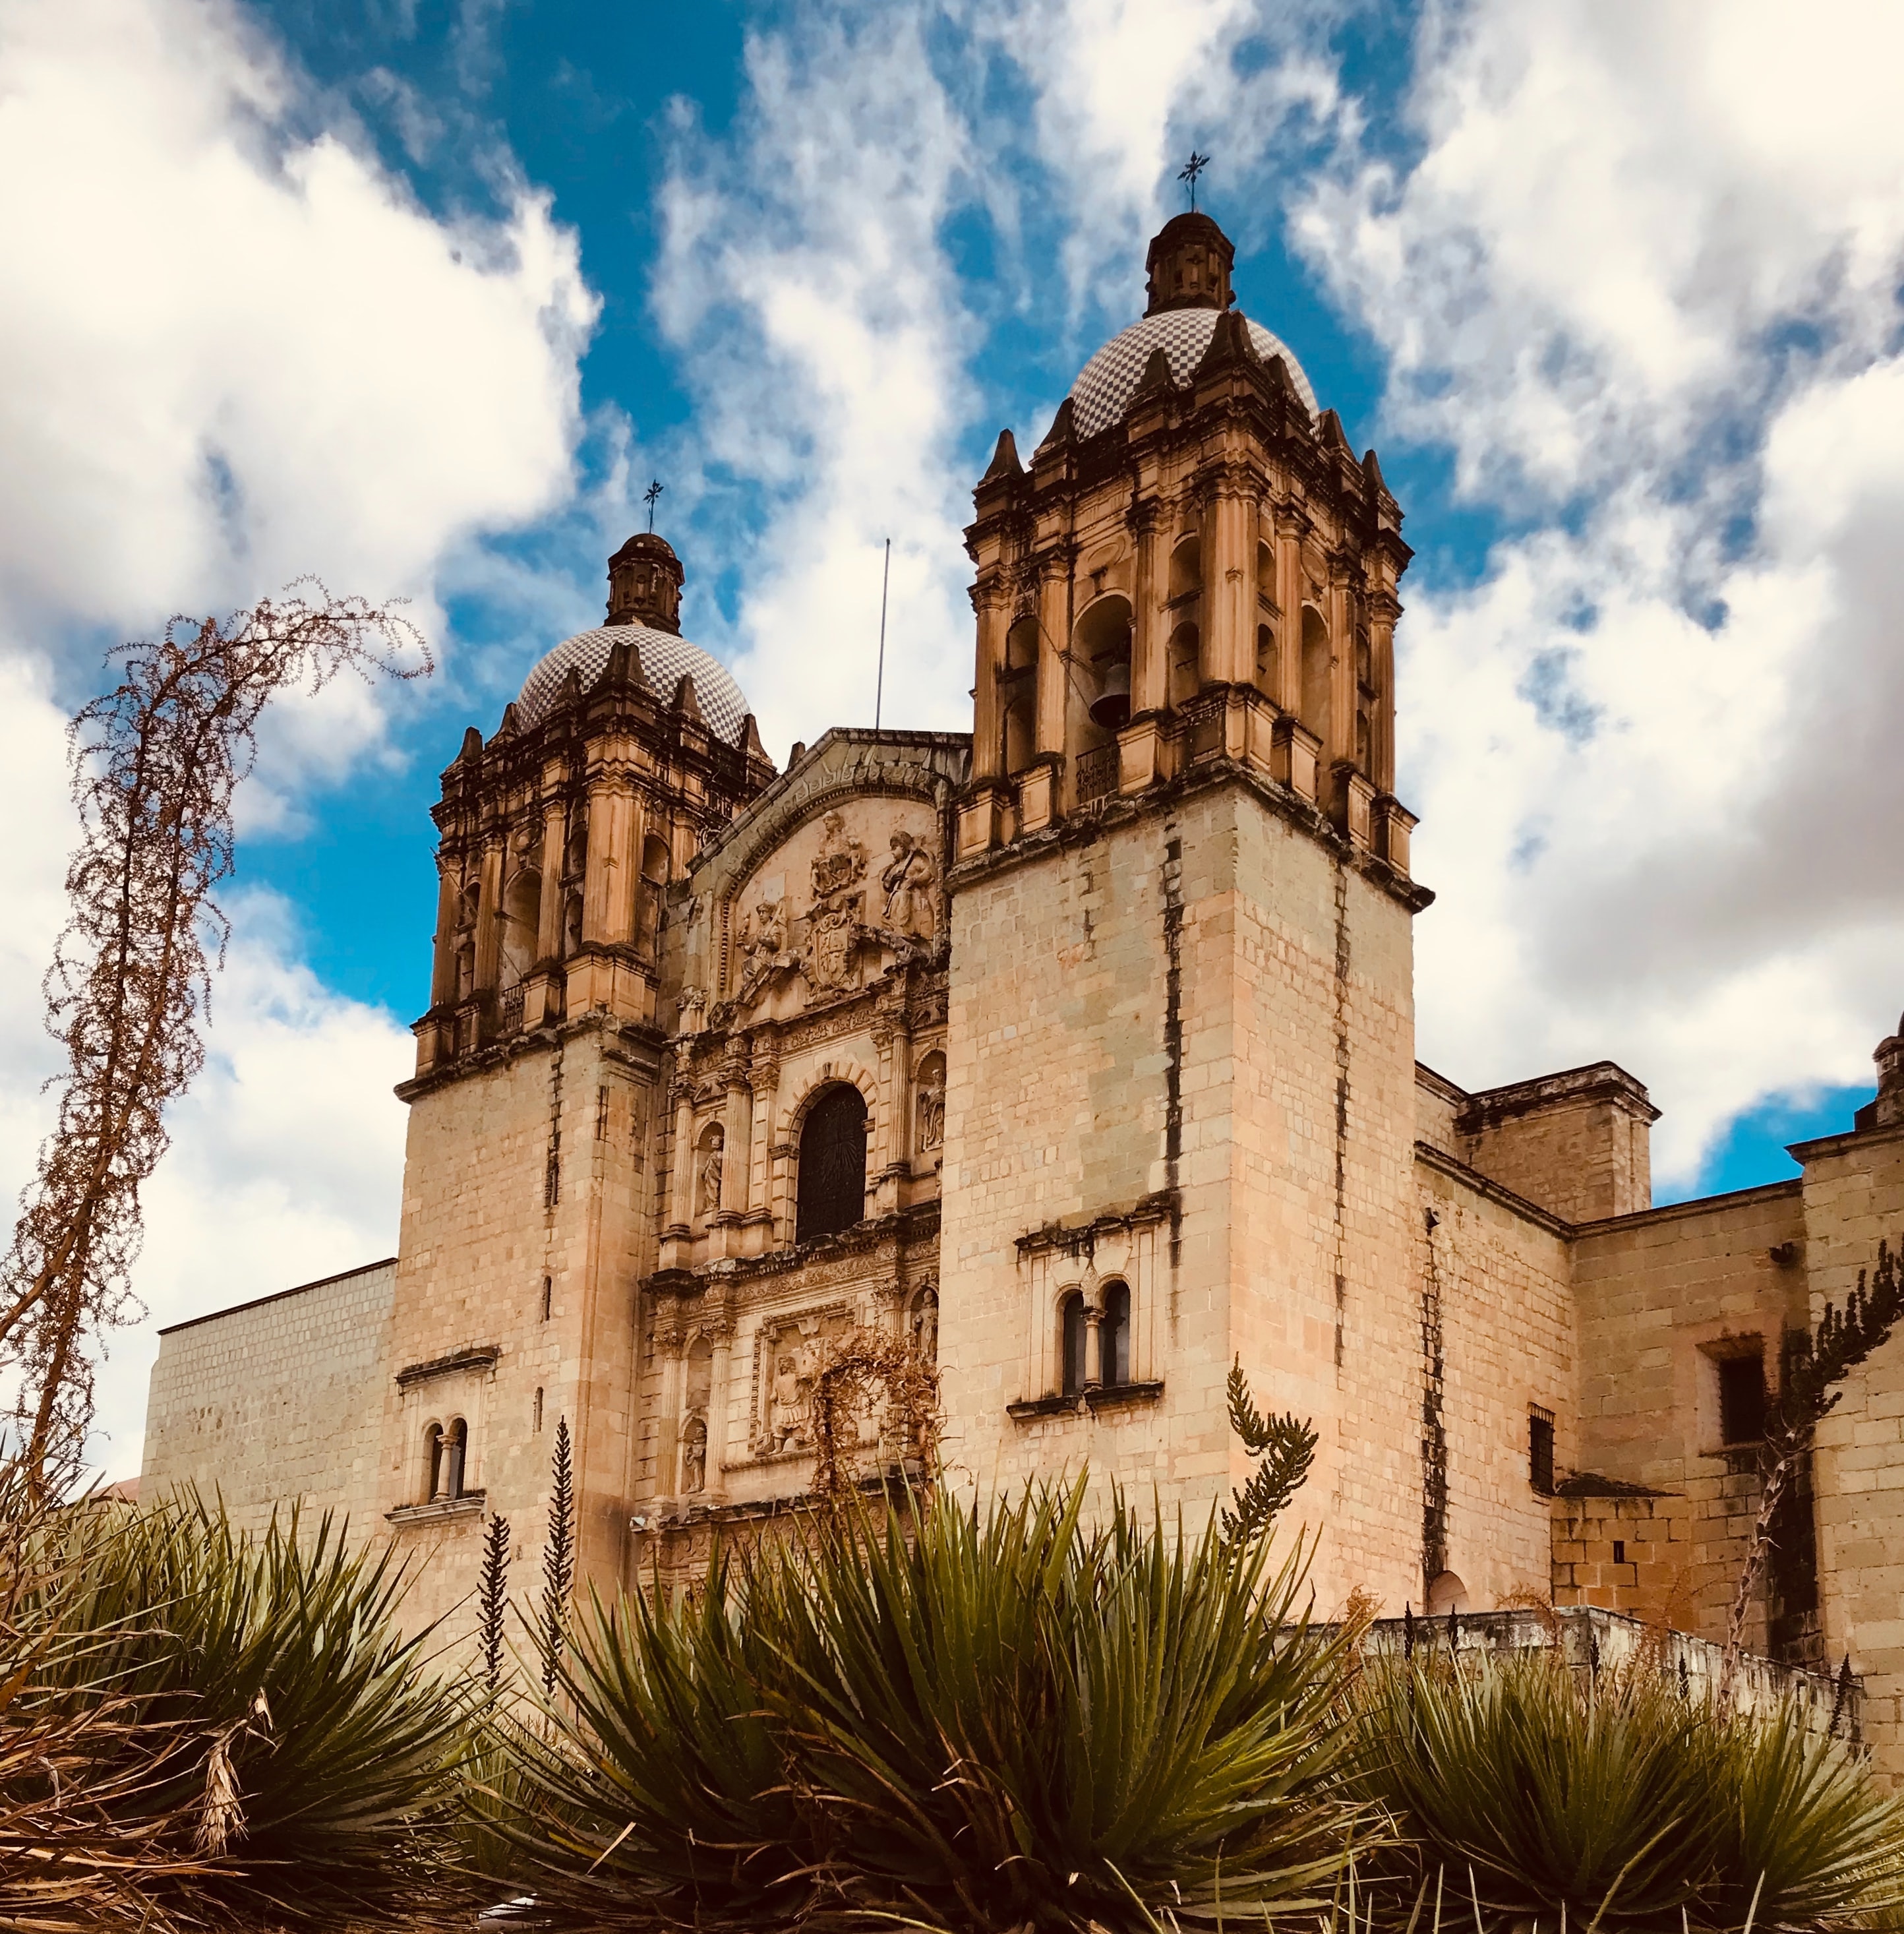 Church of Santo Domingo in Oaxaca, Mexico